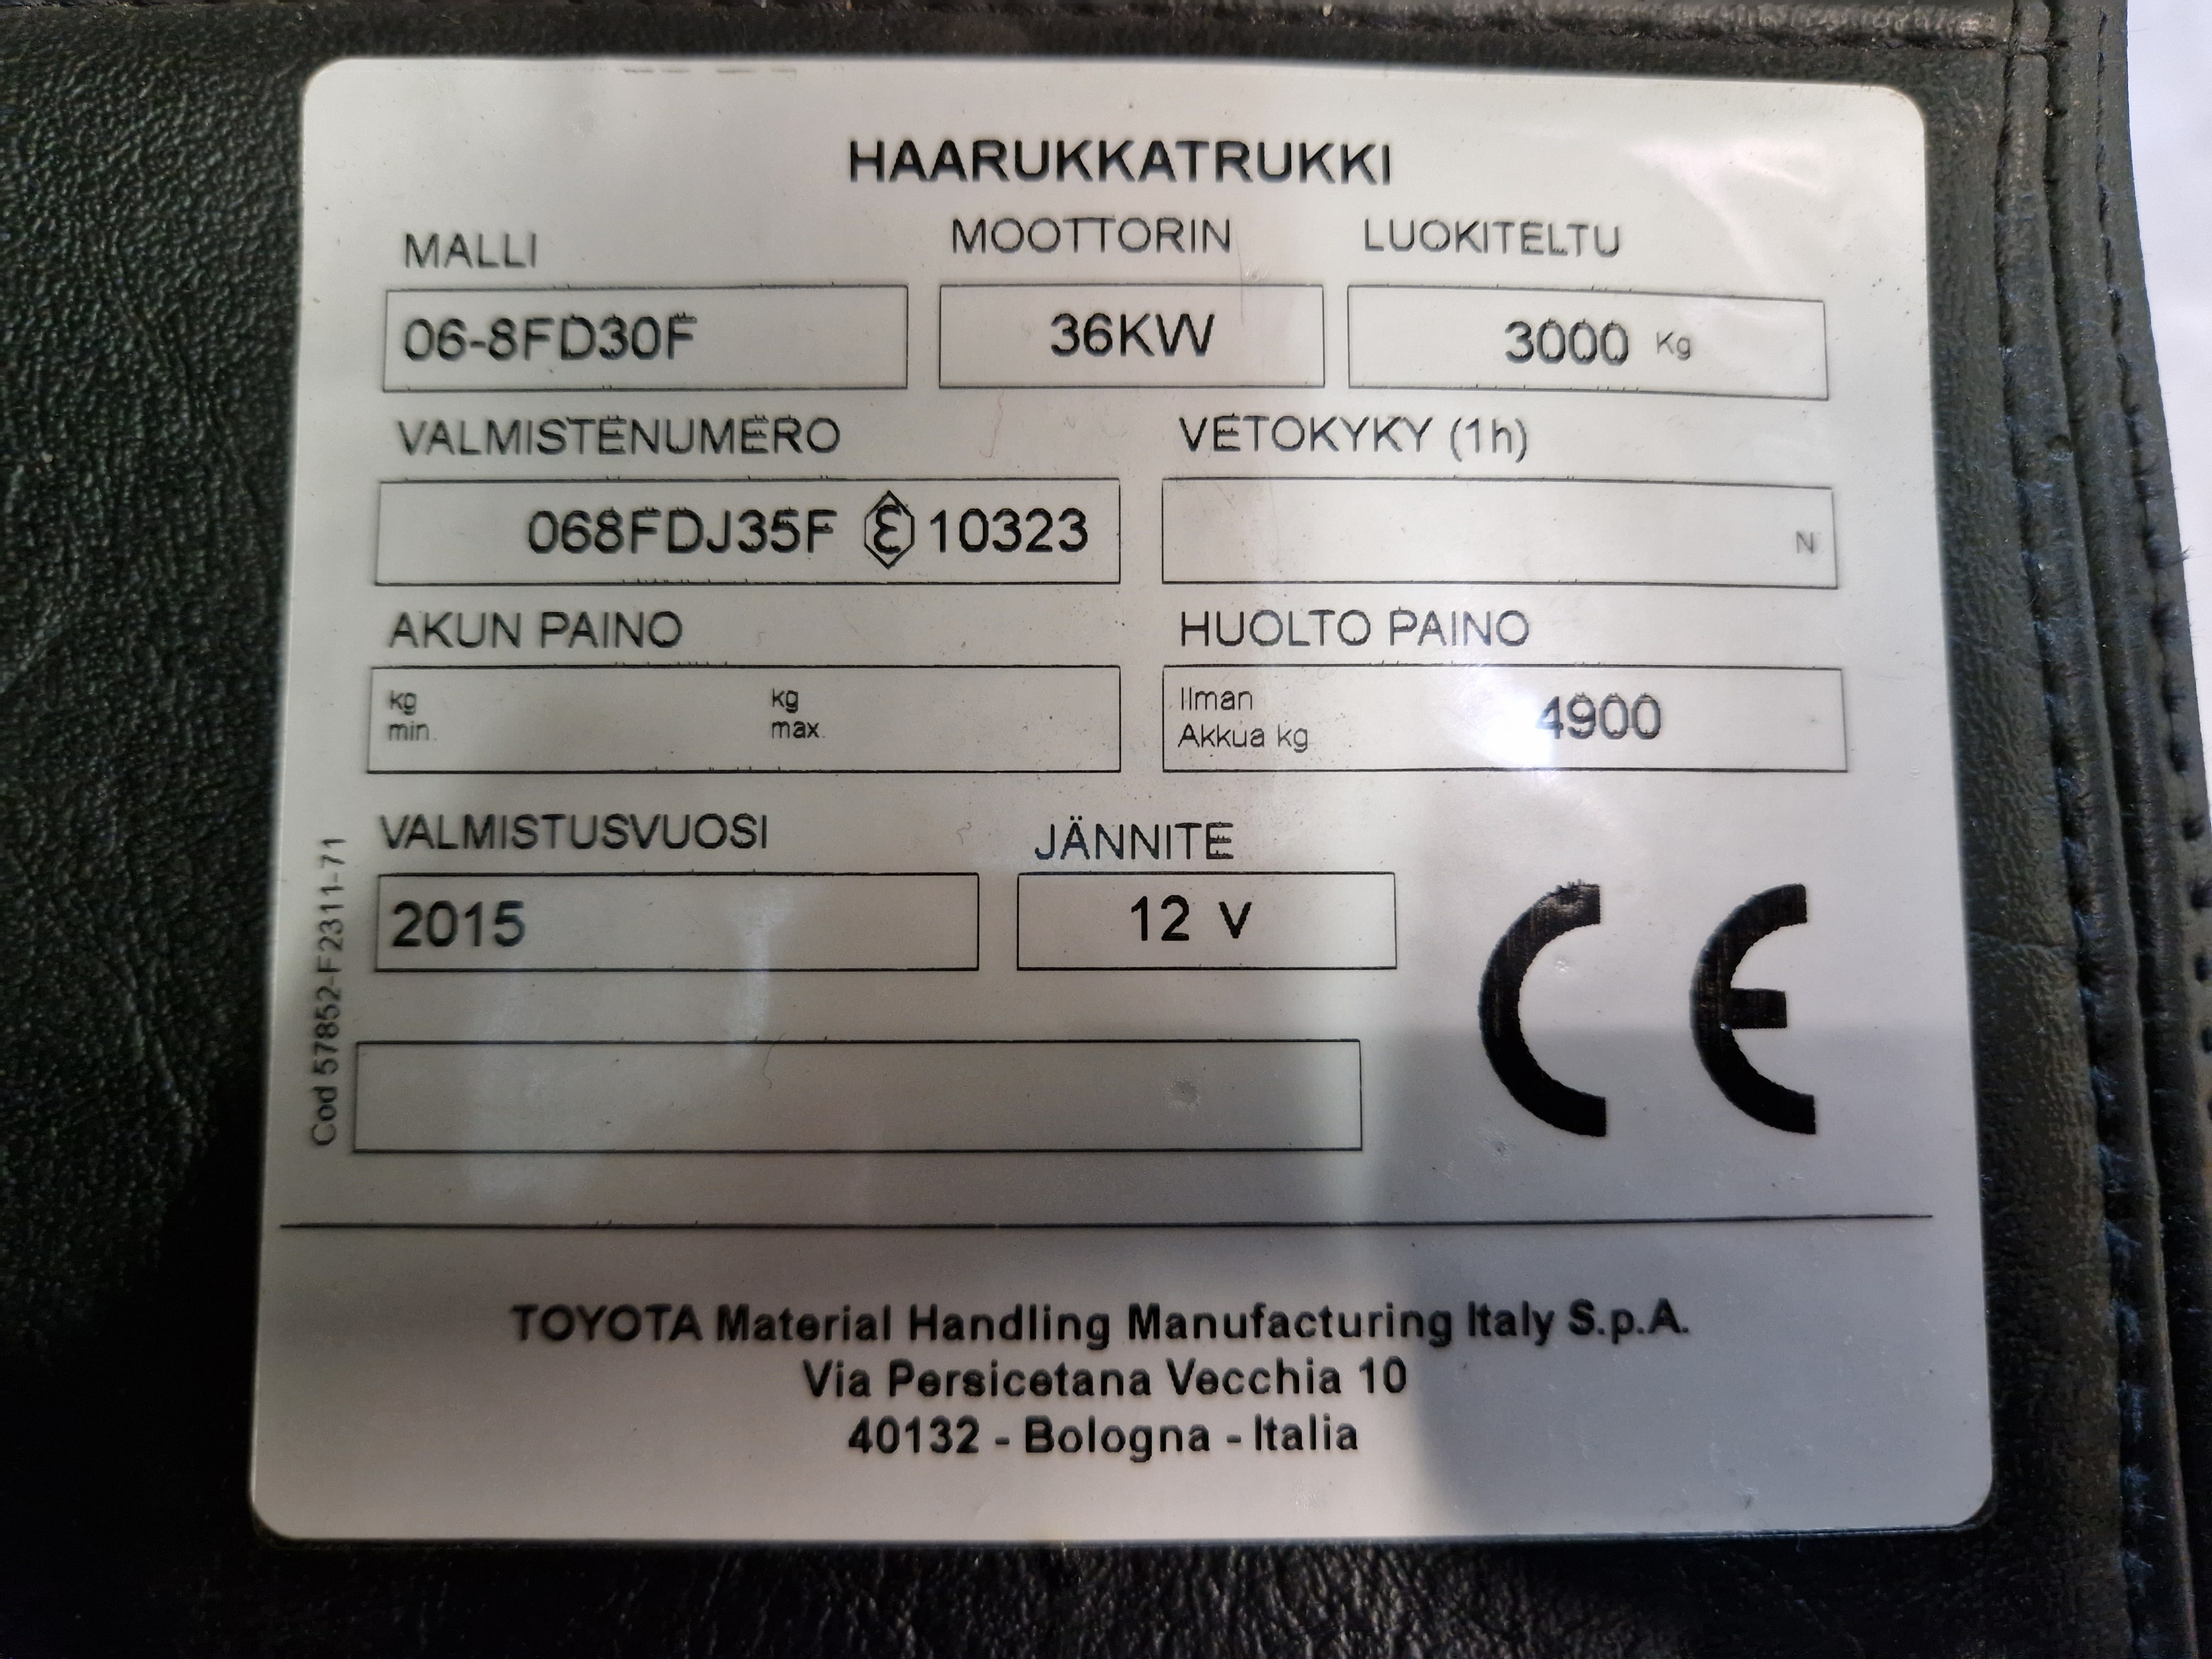 Toyota 06-8FD30F dieseltrukki vm. 2015 